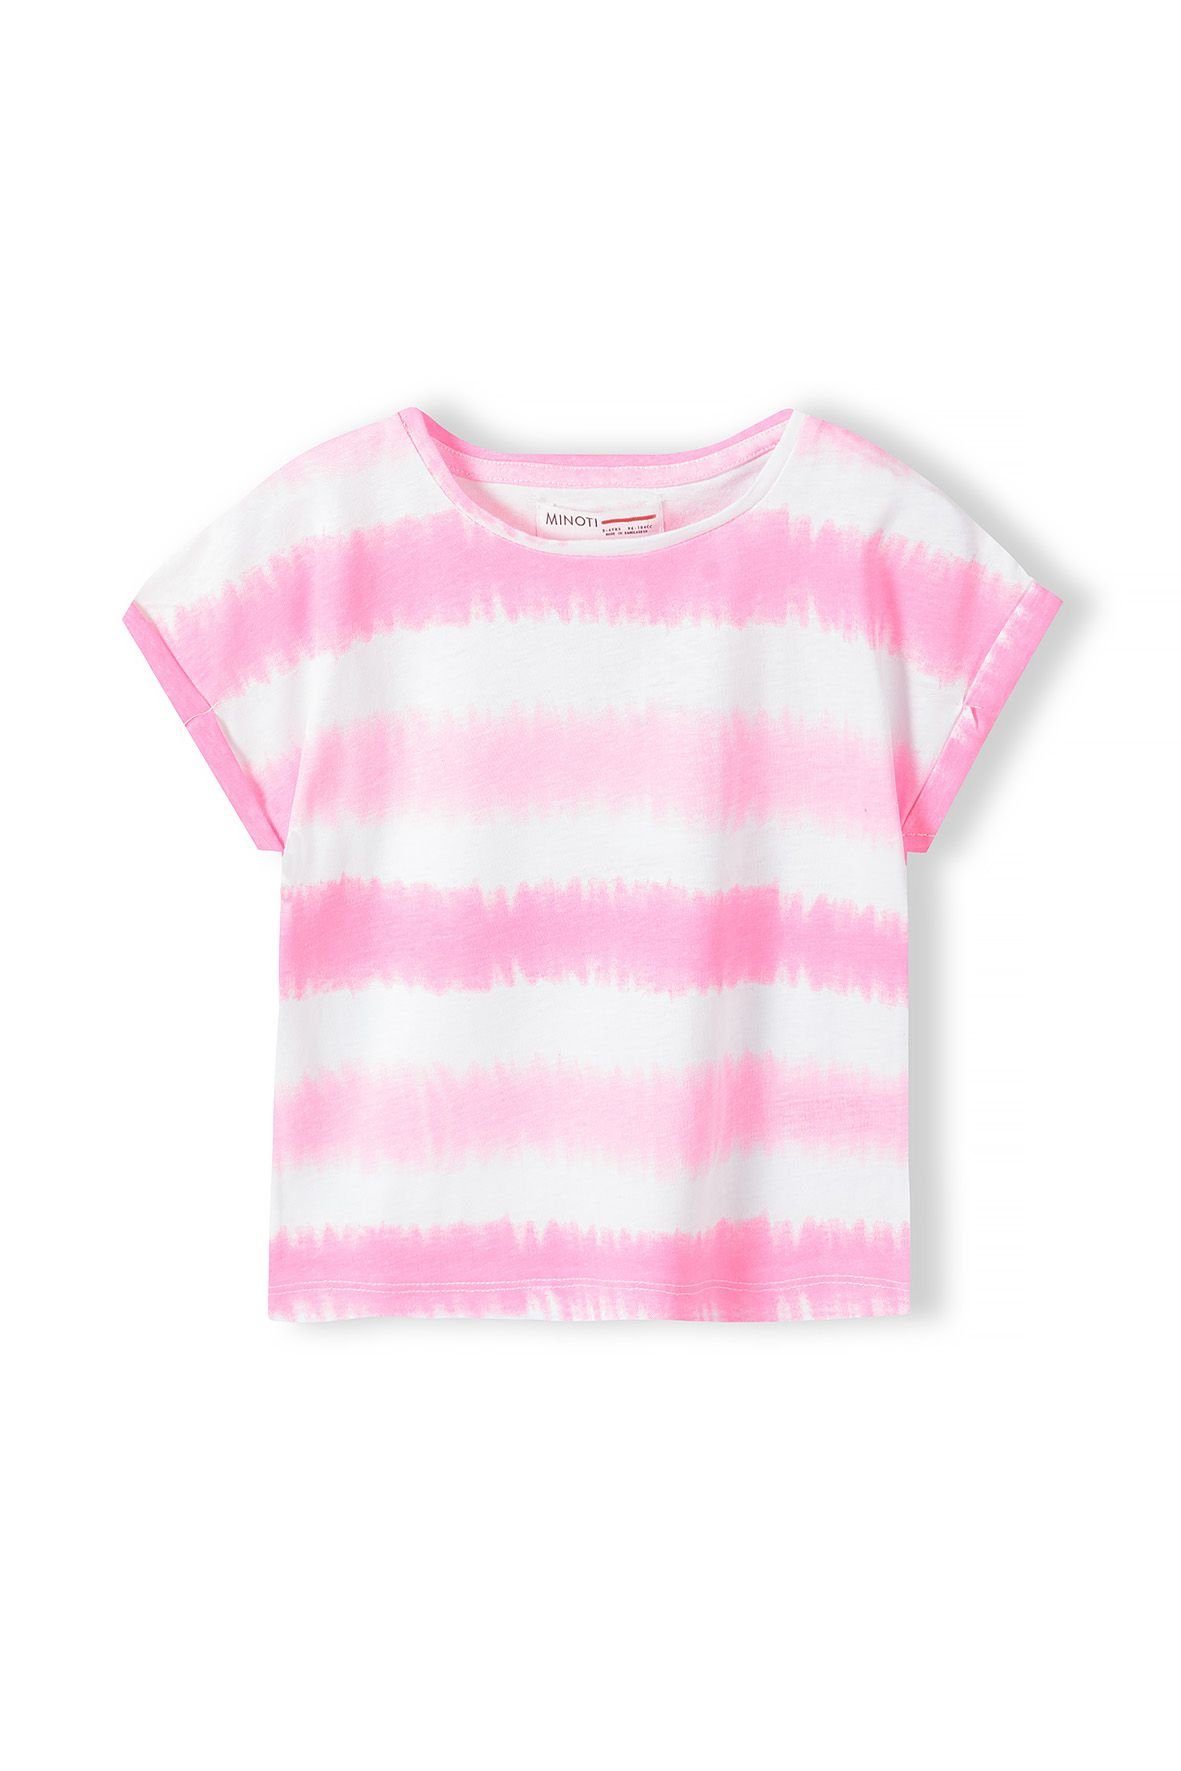 MINOTI T-Shirt Modisches T-Shirt mit Aufdruck (1y-8y) Rosa | T-Shirts